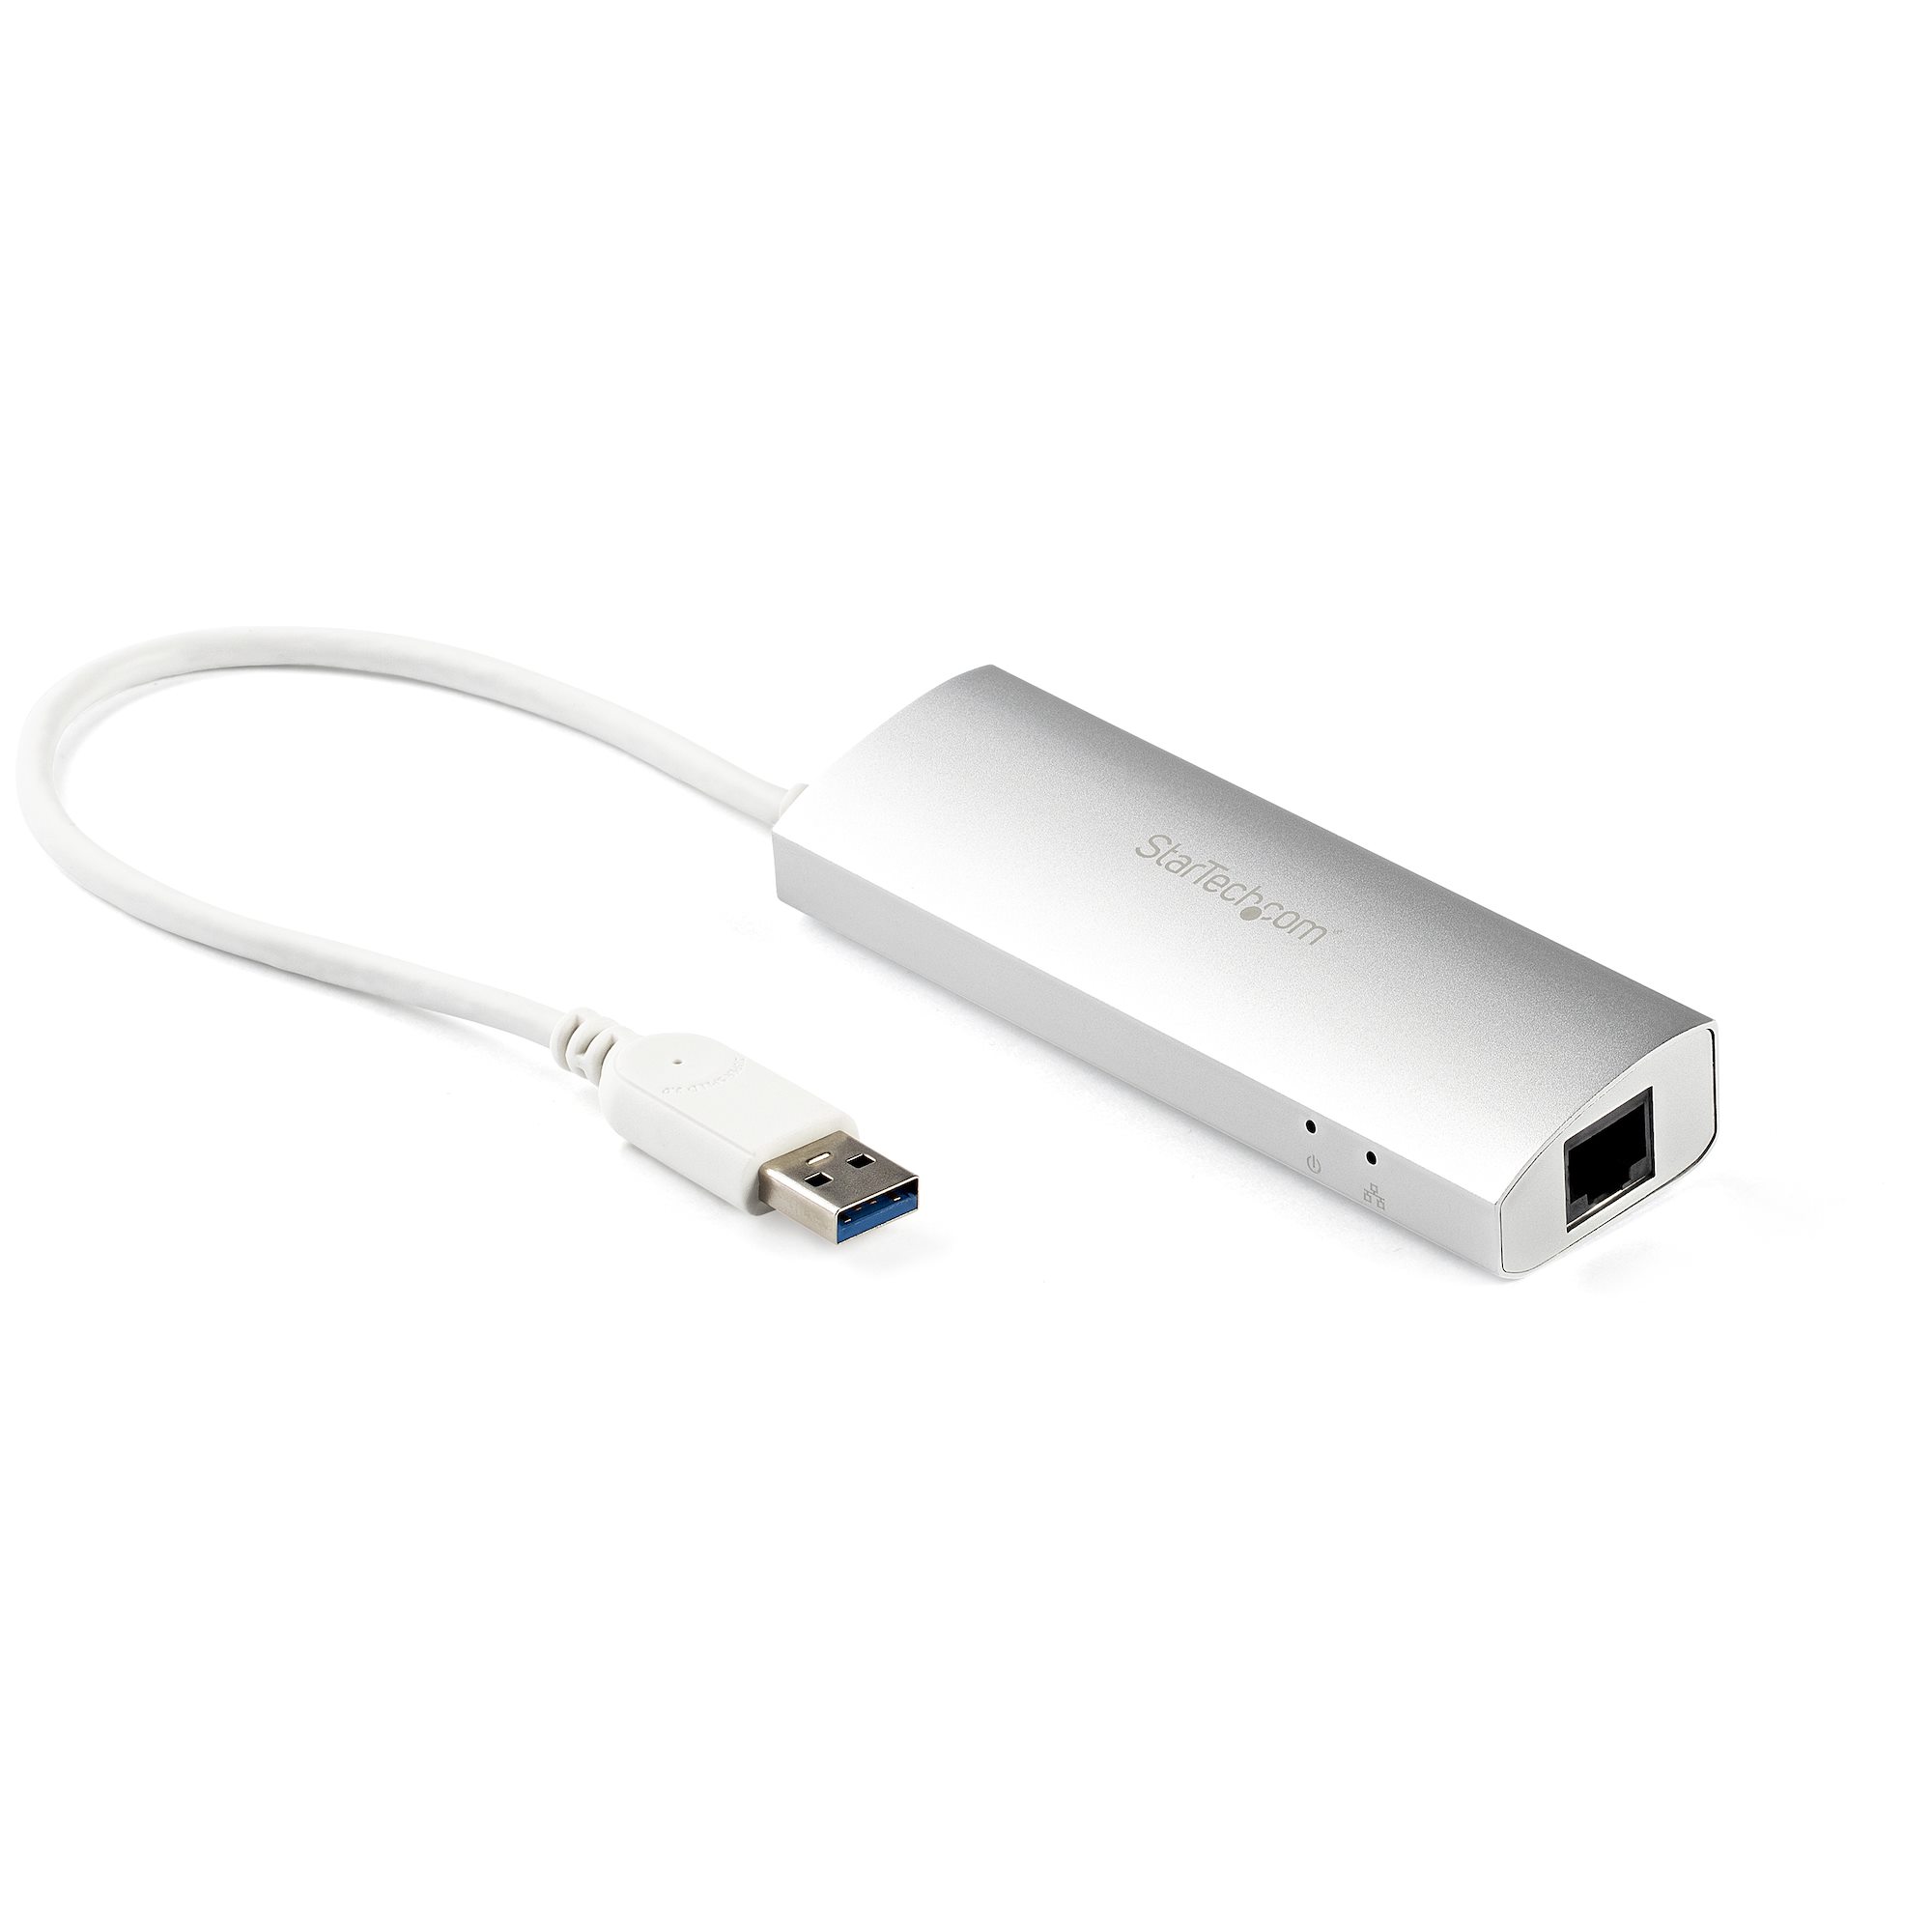 4ポート ポータブル USB 3.0ハブ ケーブル付属 ST43004UA